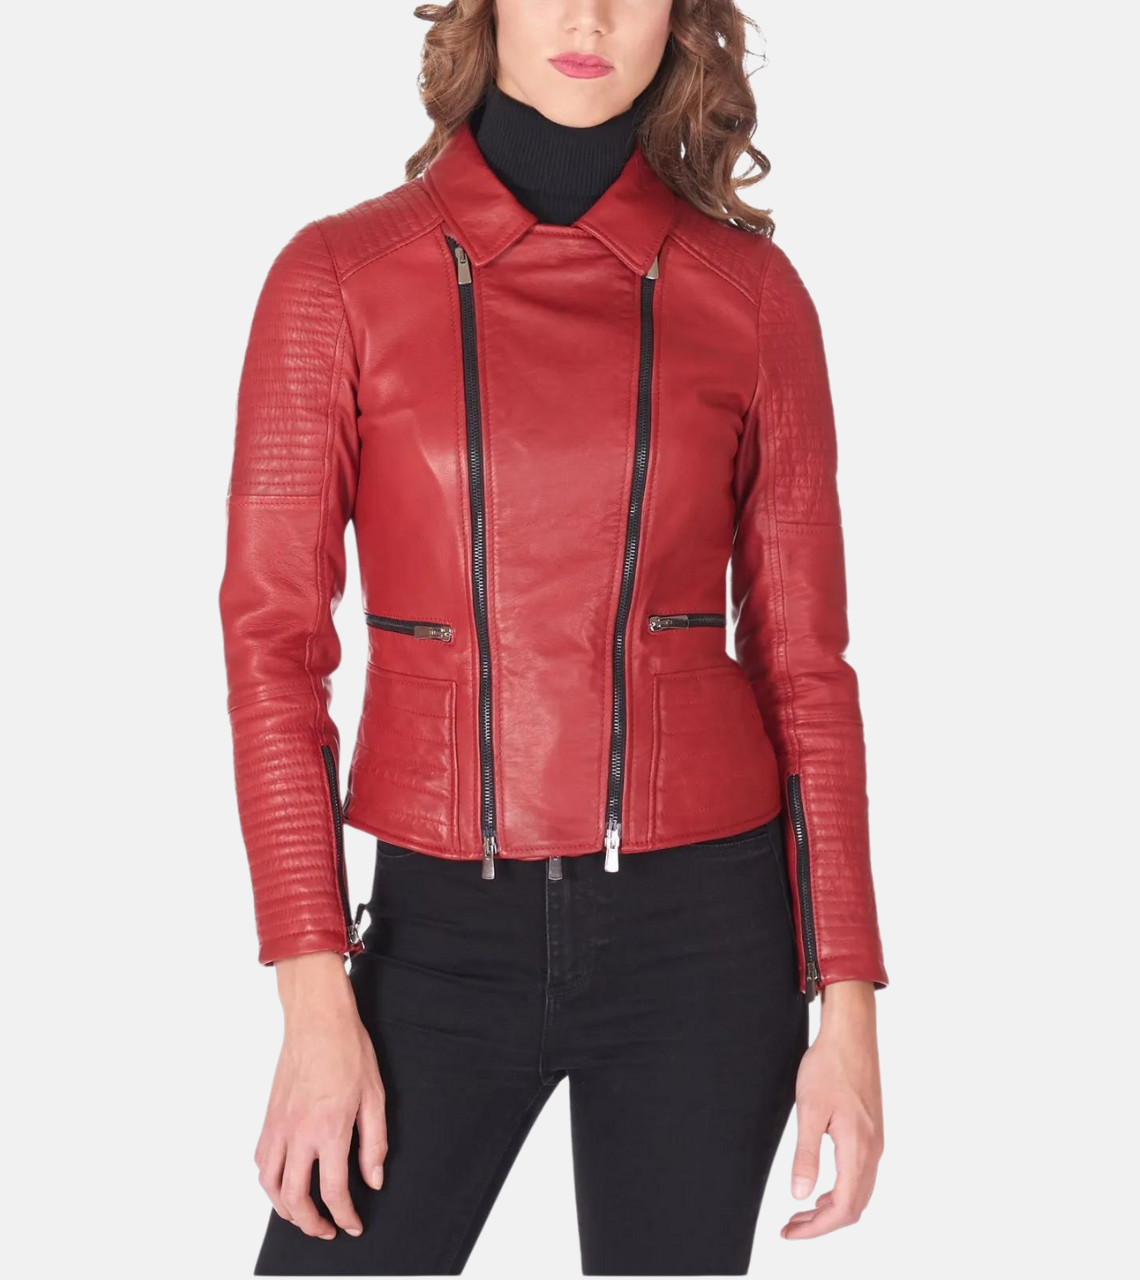 Red Sheepskin Women’s Biker Leather Jacket